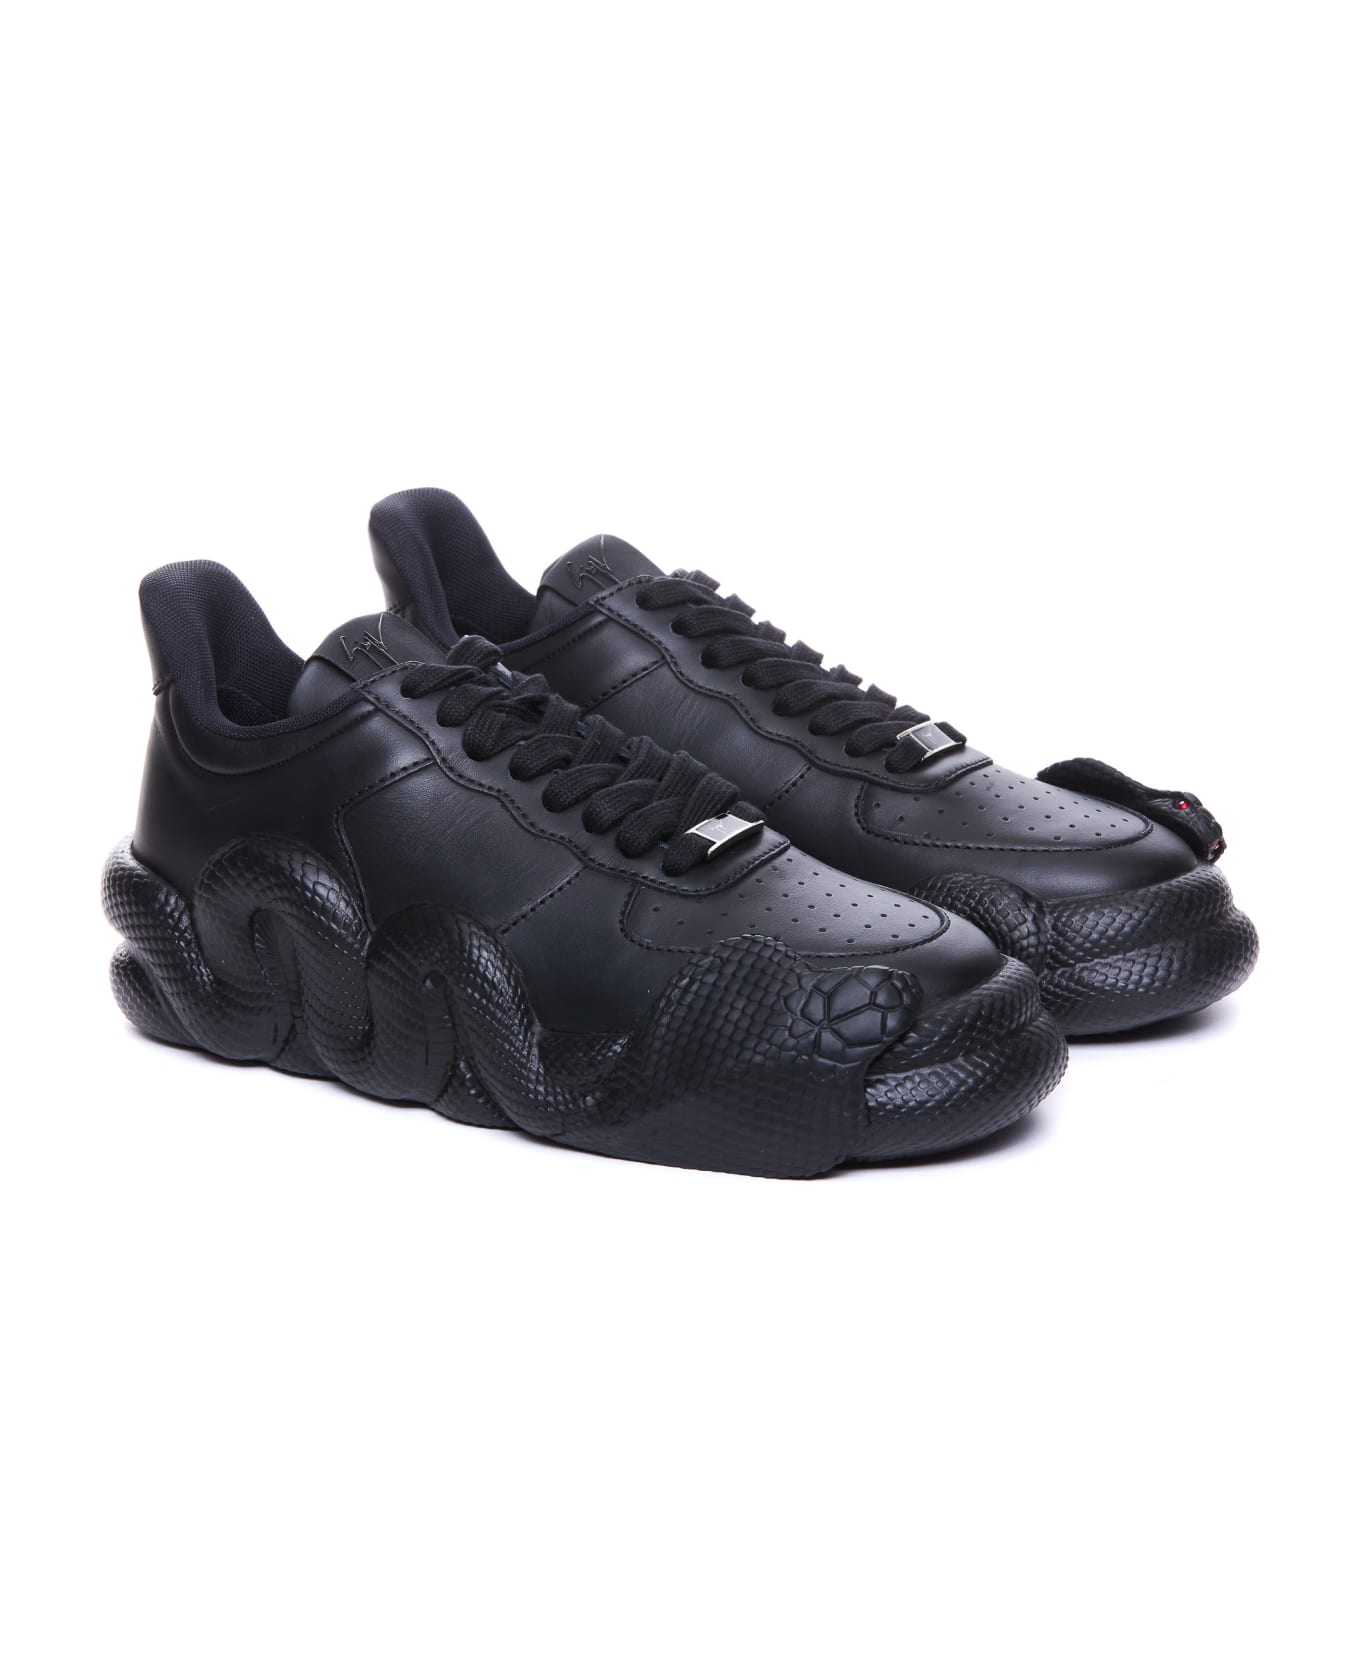 Giuseppe Zanotti Cobras Sneakers - Black スニーカー